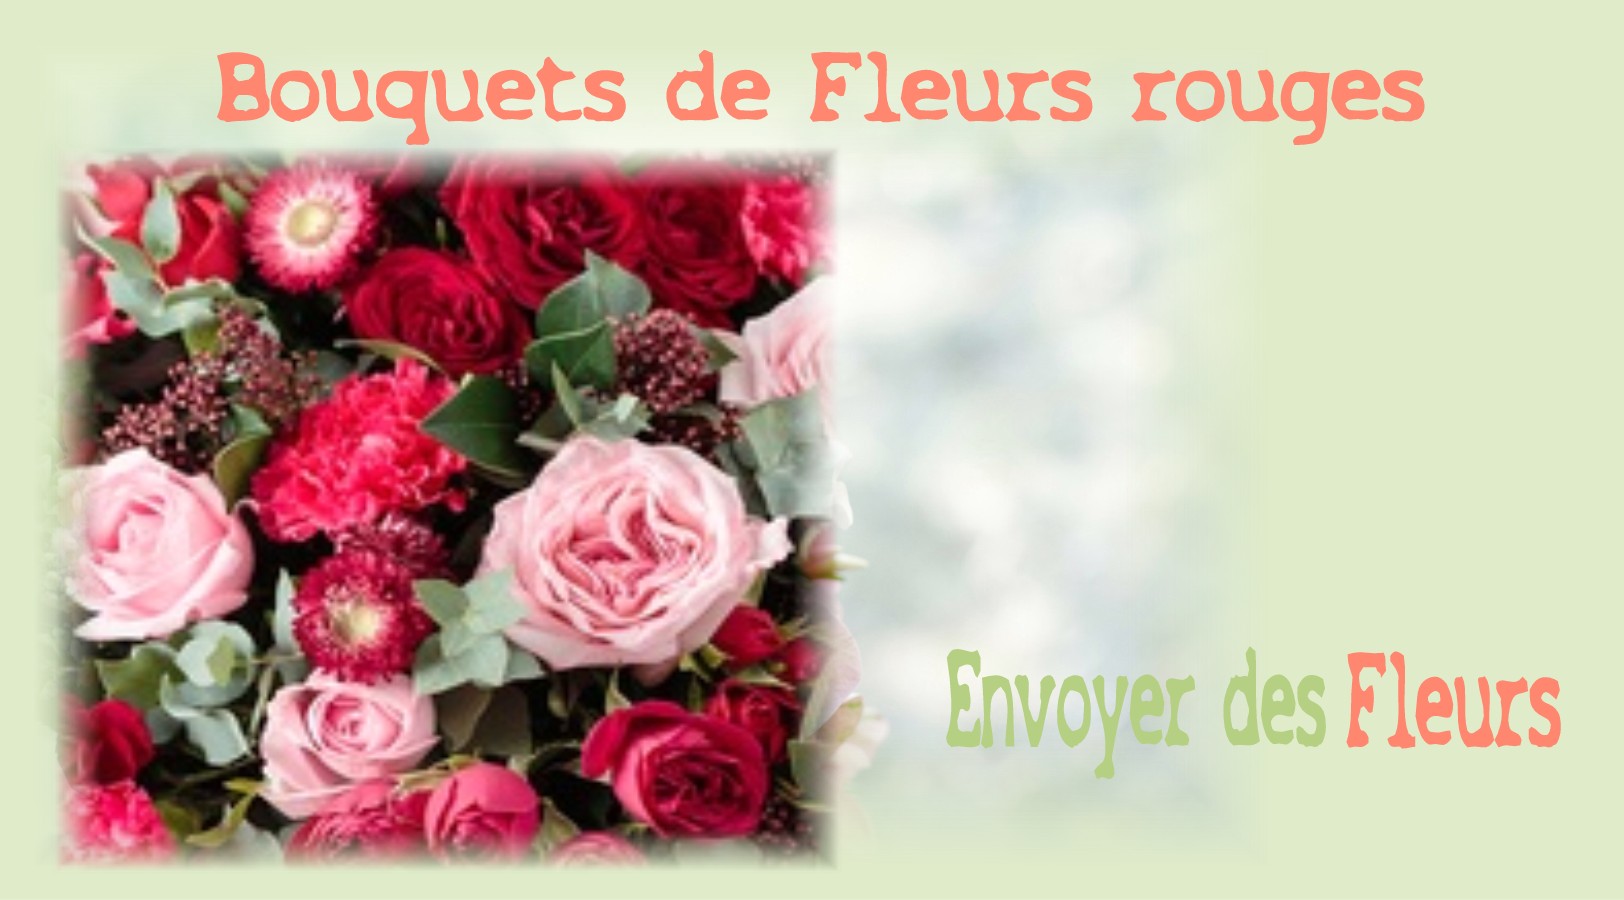 BOUQUETS DE FLEURS ROUGES - FLEURISTE NICE (06) - ENVOYER DES FLEURS